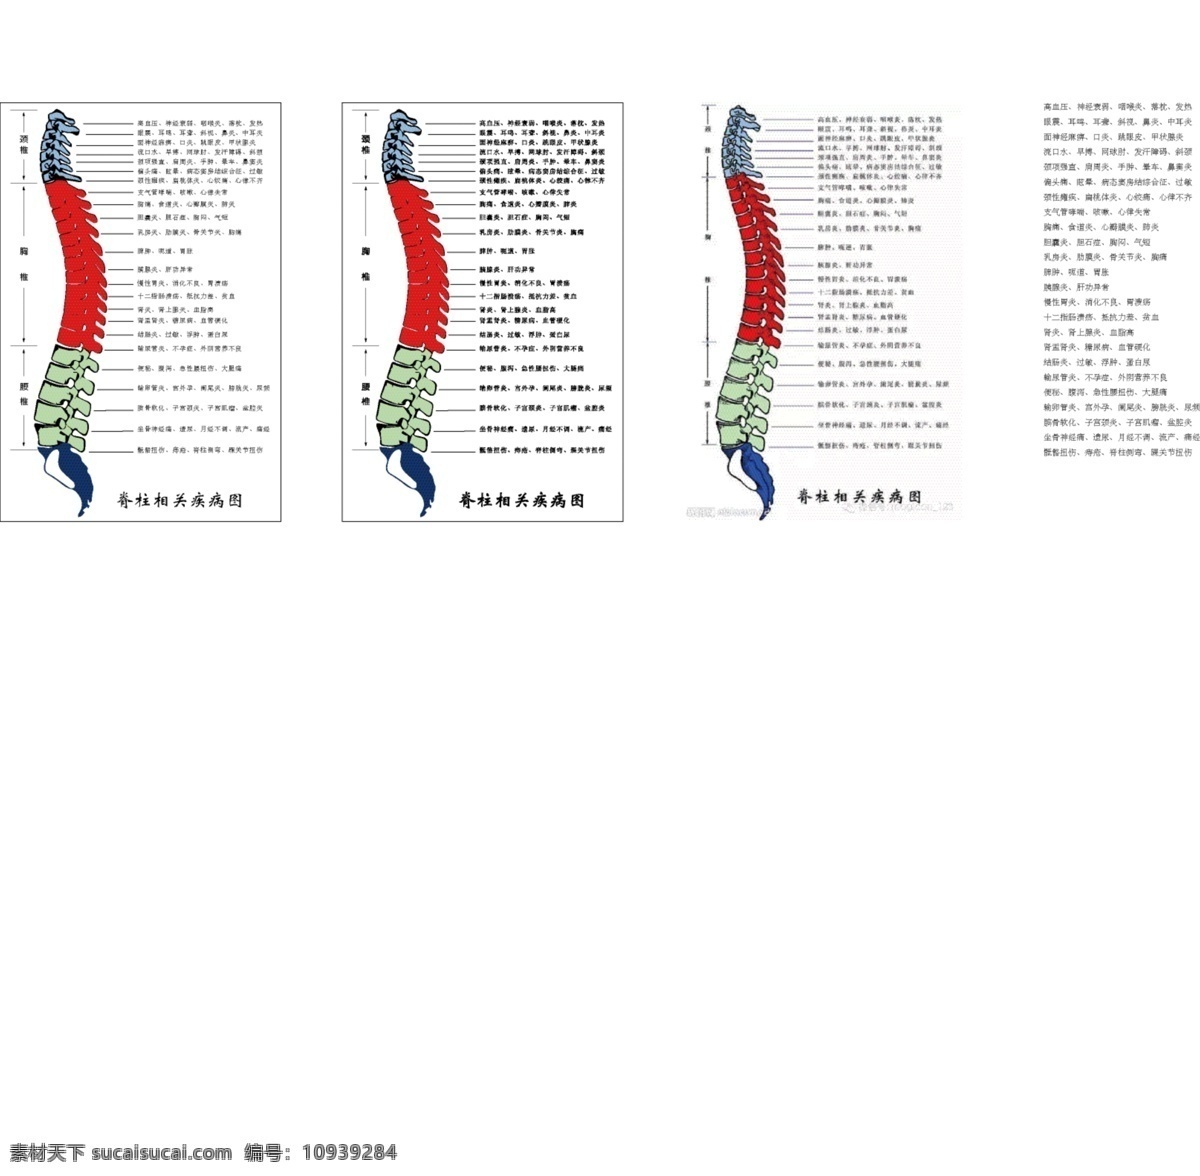 脊柱 相关 疾病 图 整脊 推拿 按摩 脊椎 示意图 节 段 神经 脏器 关系 颈椎 腰椎 胸椎 矢量图 矢量